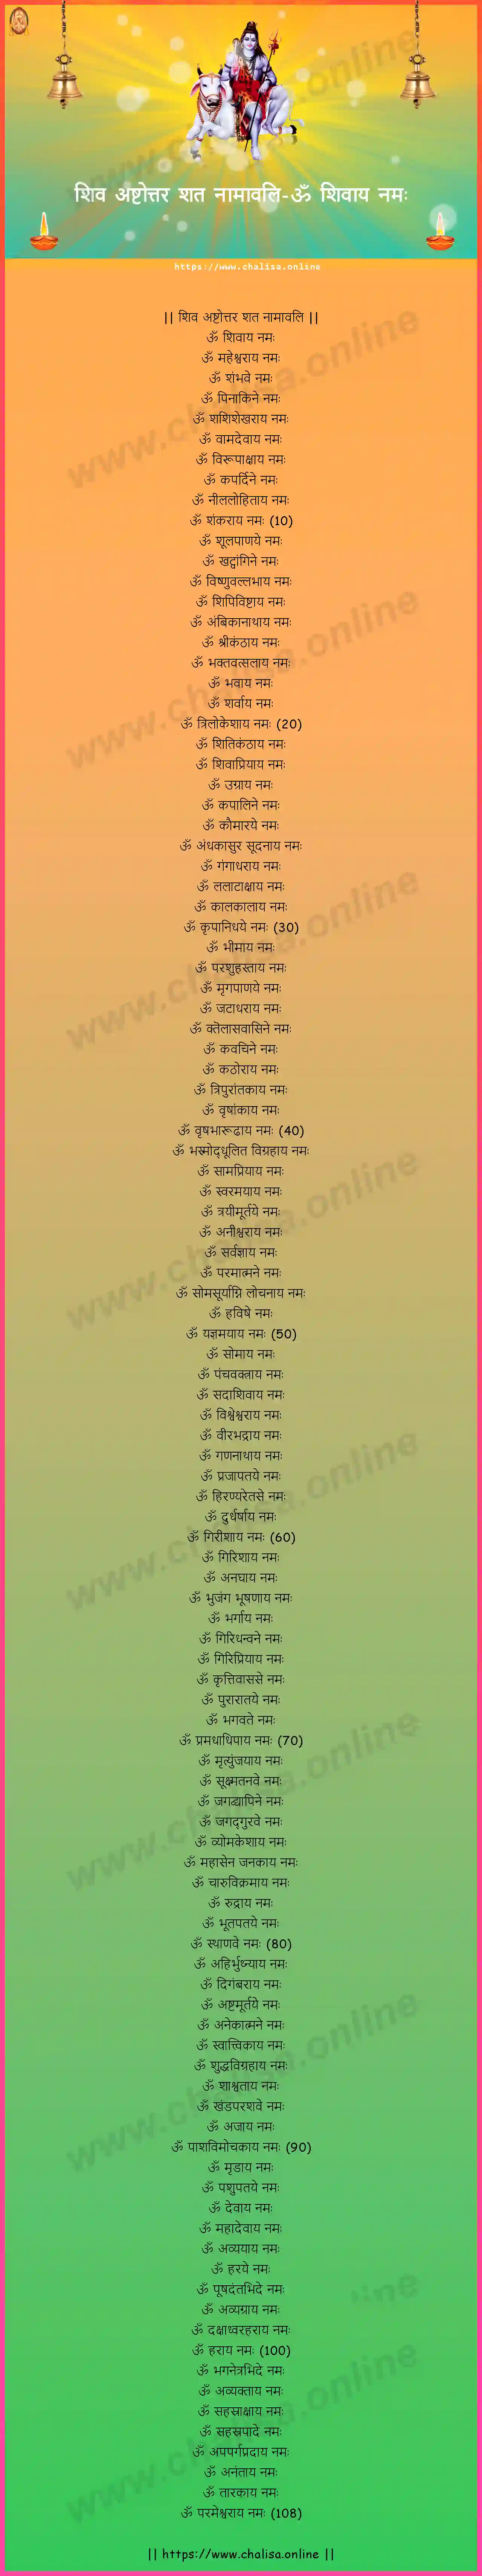 om-sivaya-namah-shiva-ashtottara-sata-namavali-konkani-konkani-lyrics-download